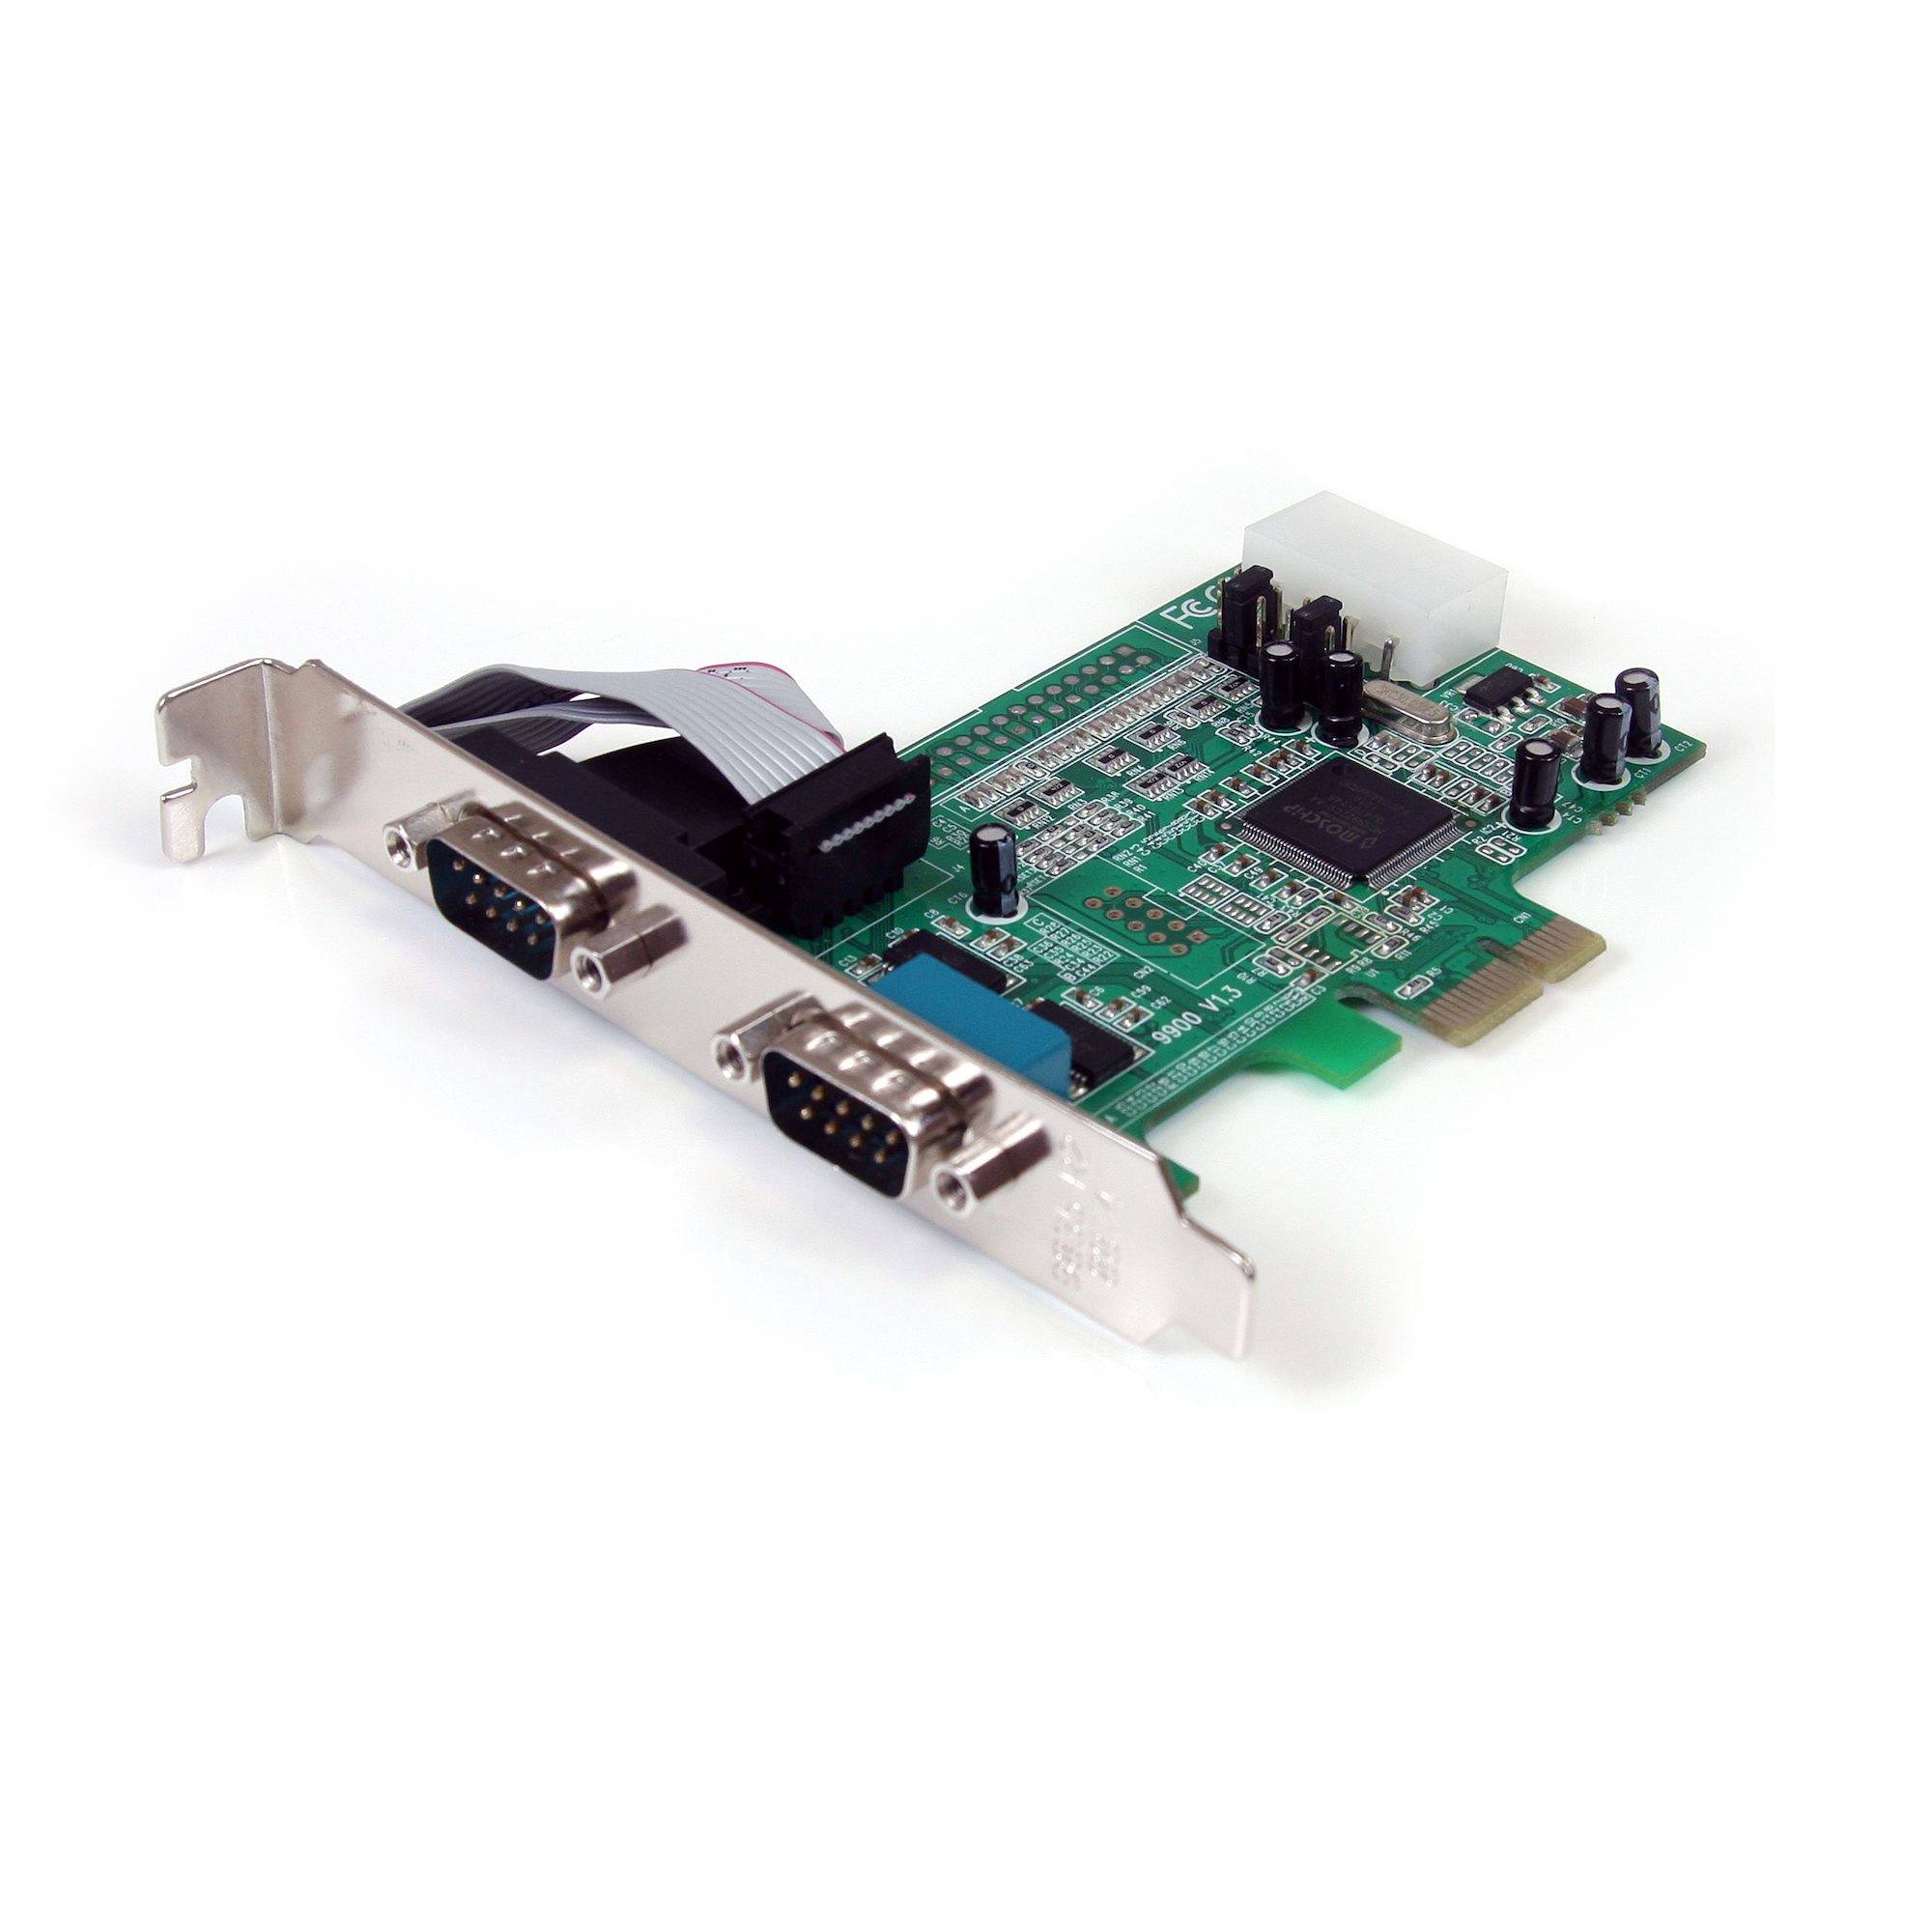 Rca Informatique - image du produit : CARTE SERIE PCI-ERS232 AVEC 2 PORTS UART 16550